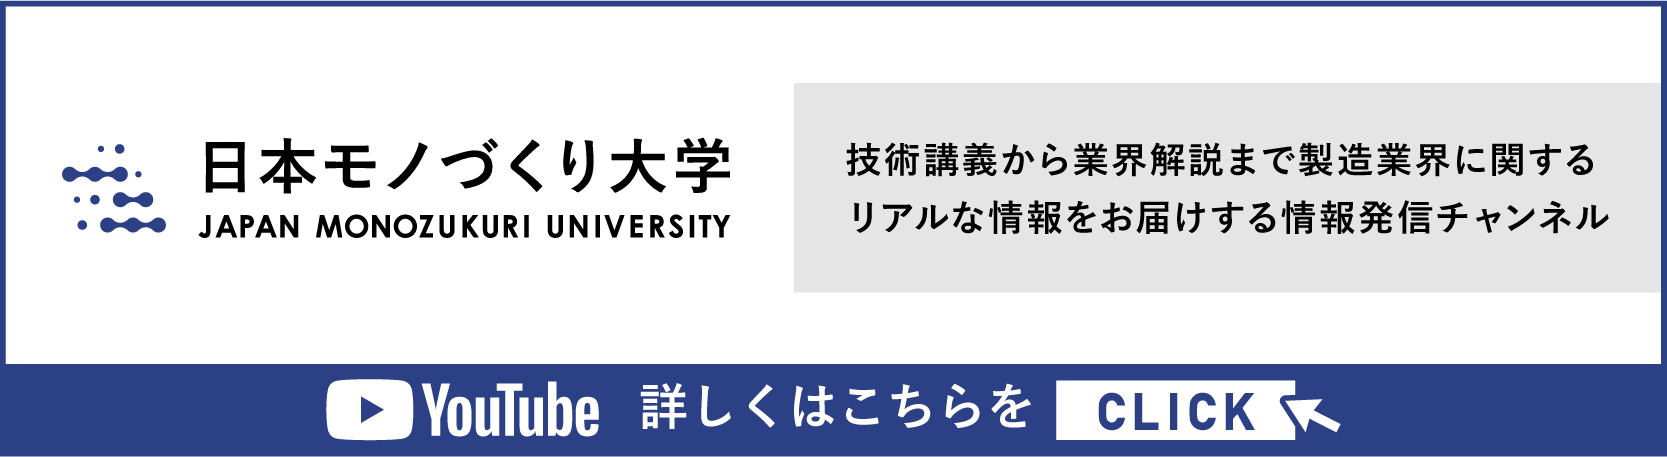 日本モノづくり大学バナー